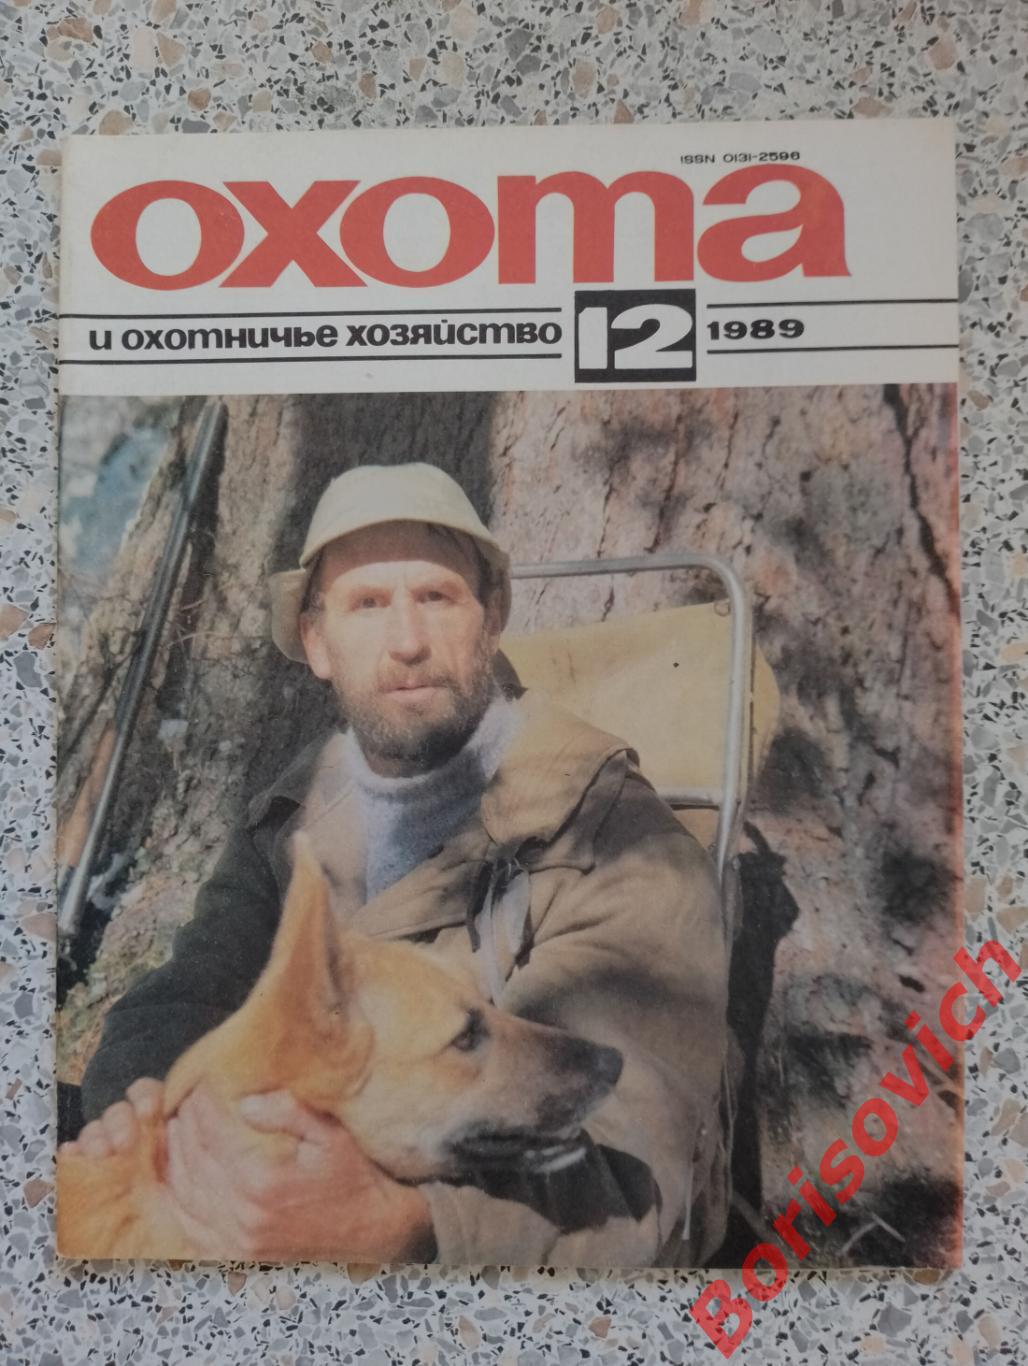 ОХОТА и охотничье хозяйство N 12. 1989